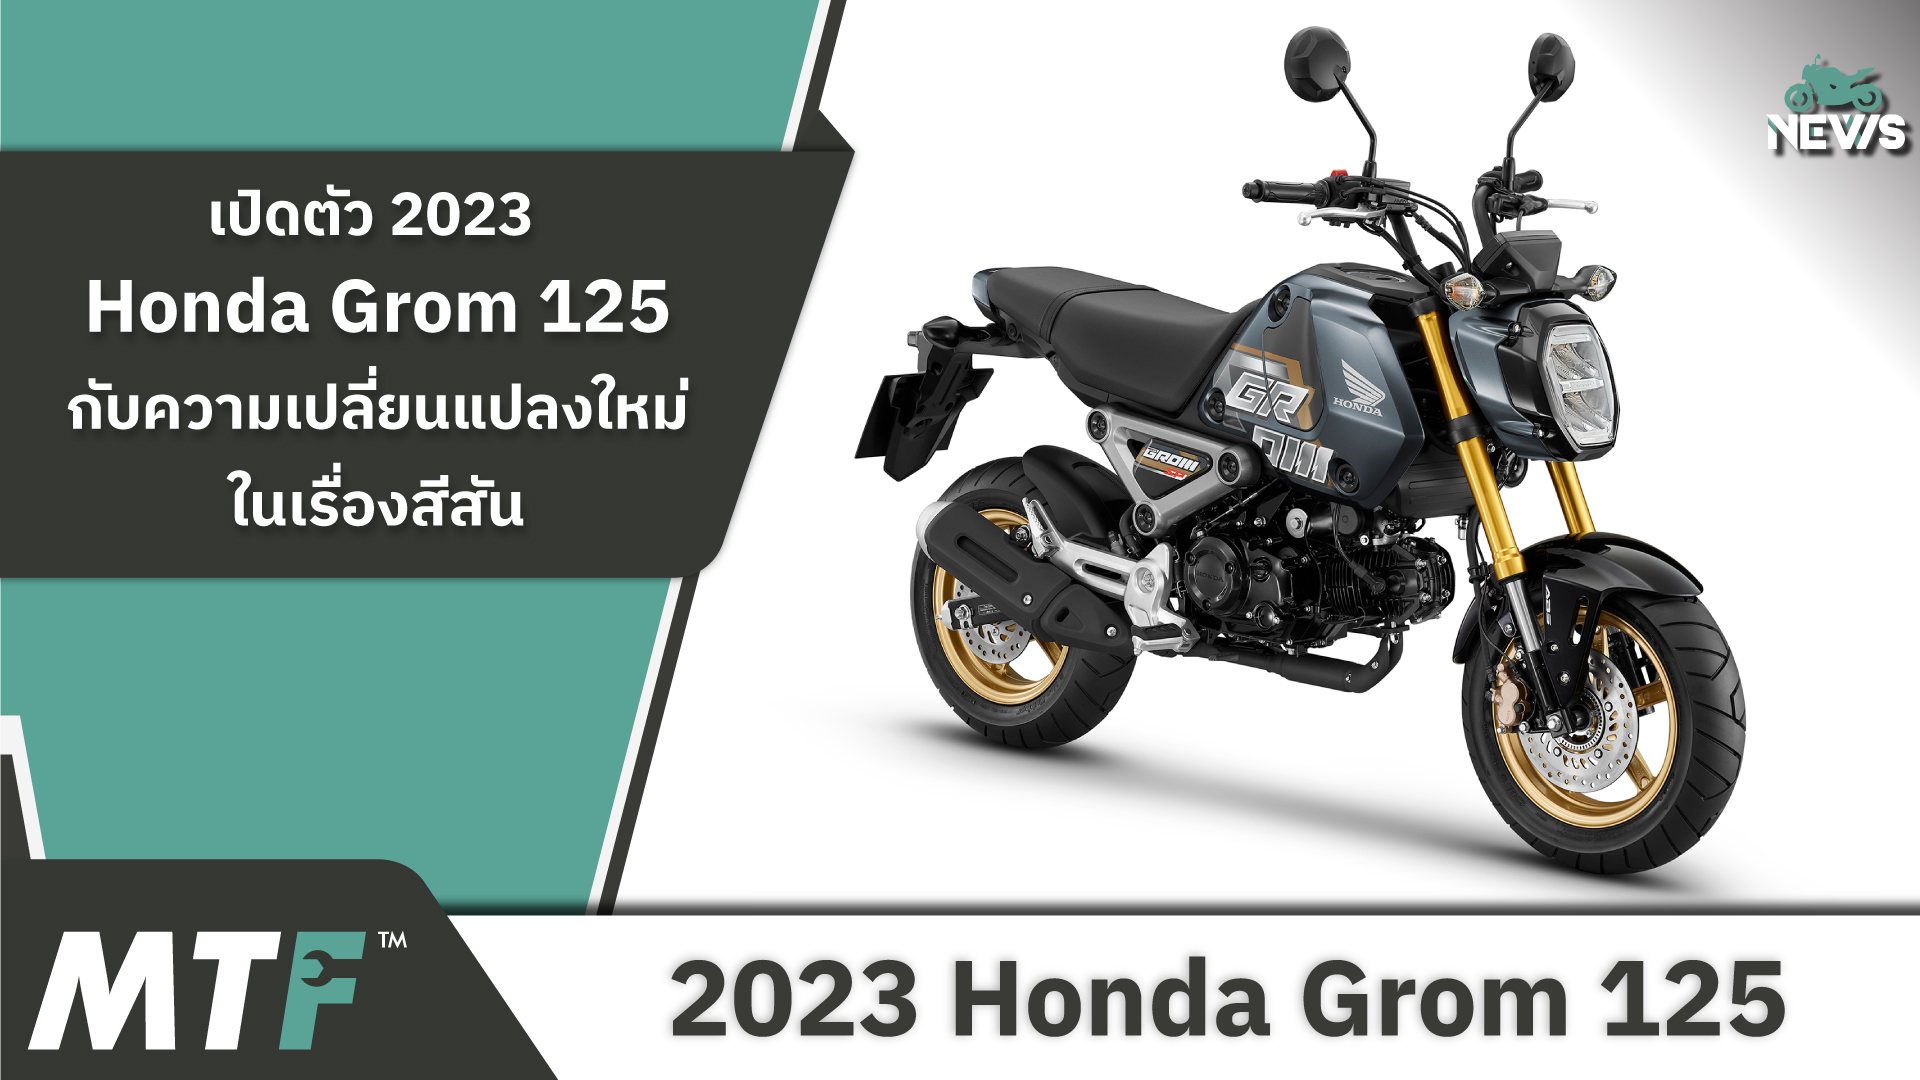 เปิดตัว 2023 Honda Grom 125 กับความเปลี่ยนแปลงใหม่ในเรื่องสีสัน